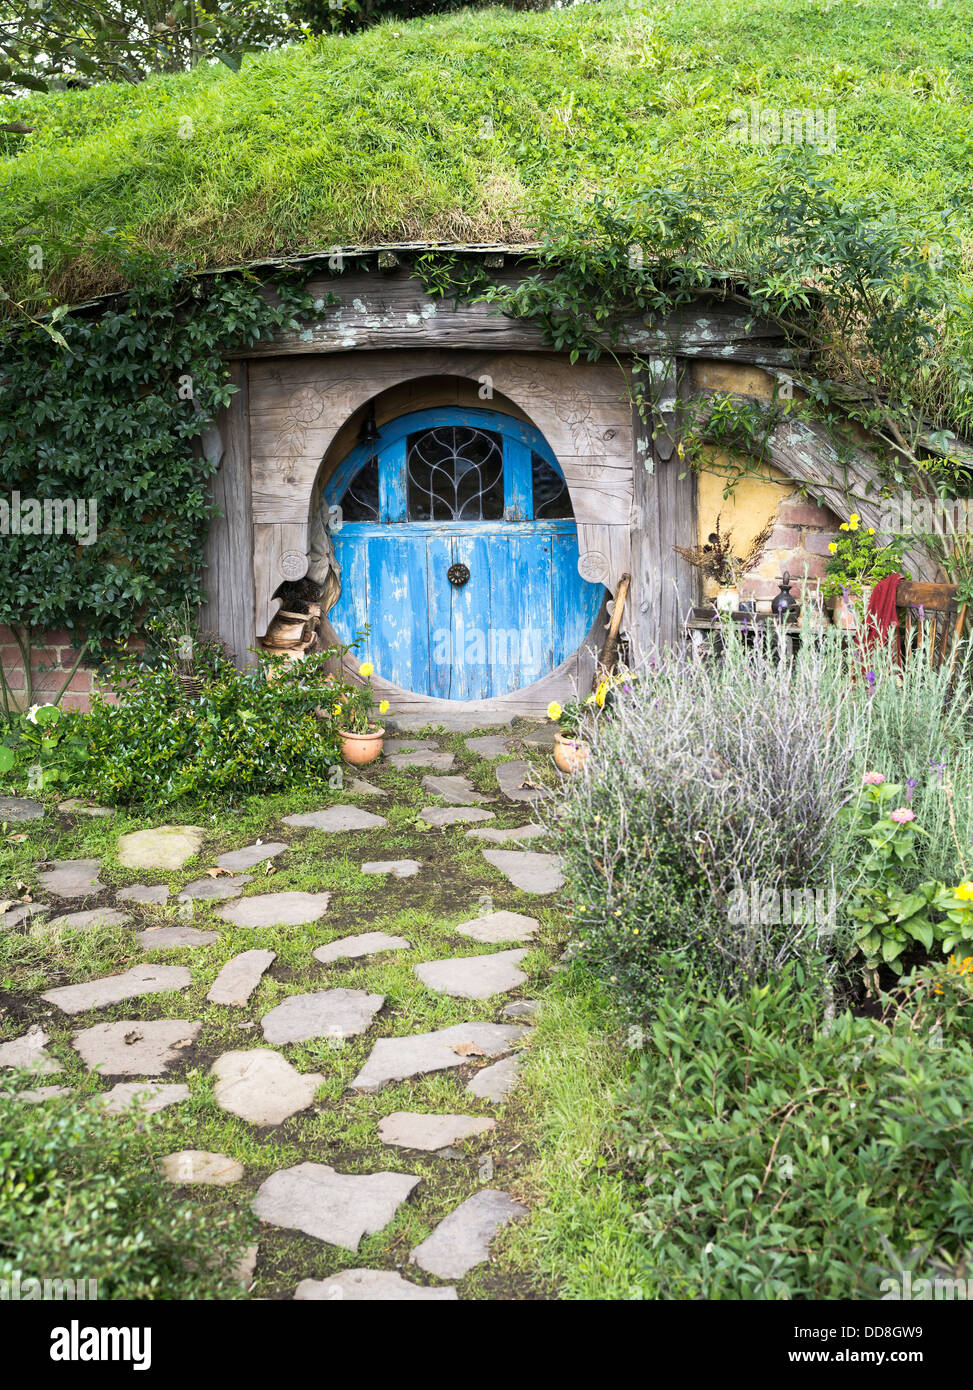 dh HOBBITON NUEVA ZELANDA Hobbits casa rural puerta jardín película juego sitio Señor de los anillos películas casa hobbit Foto de stock